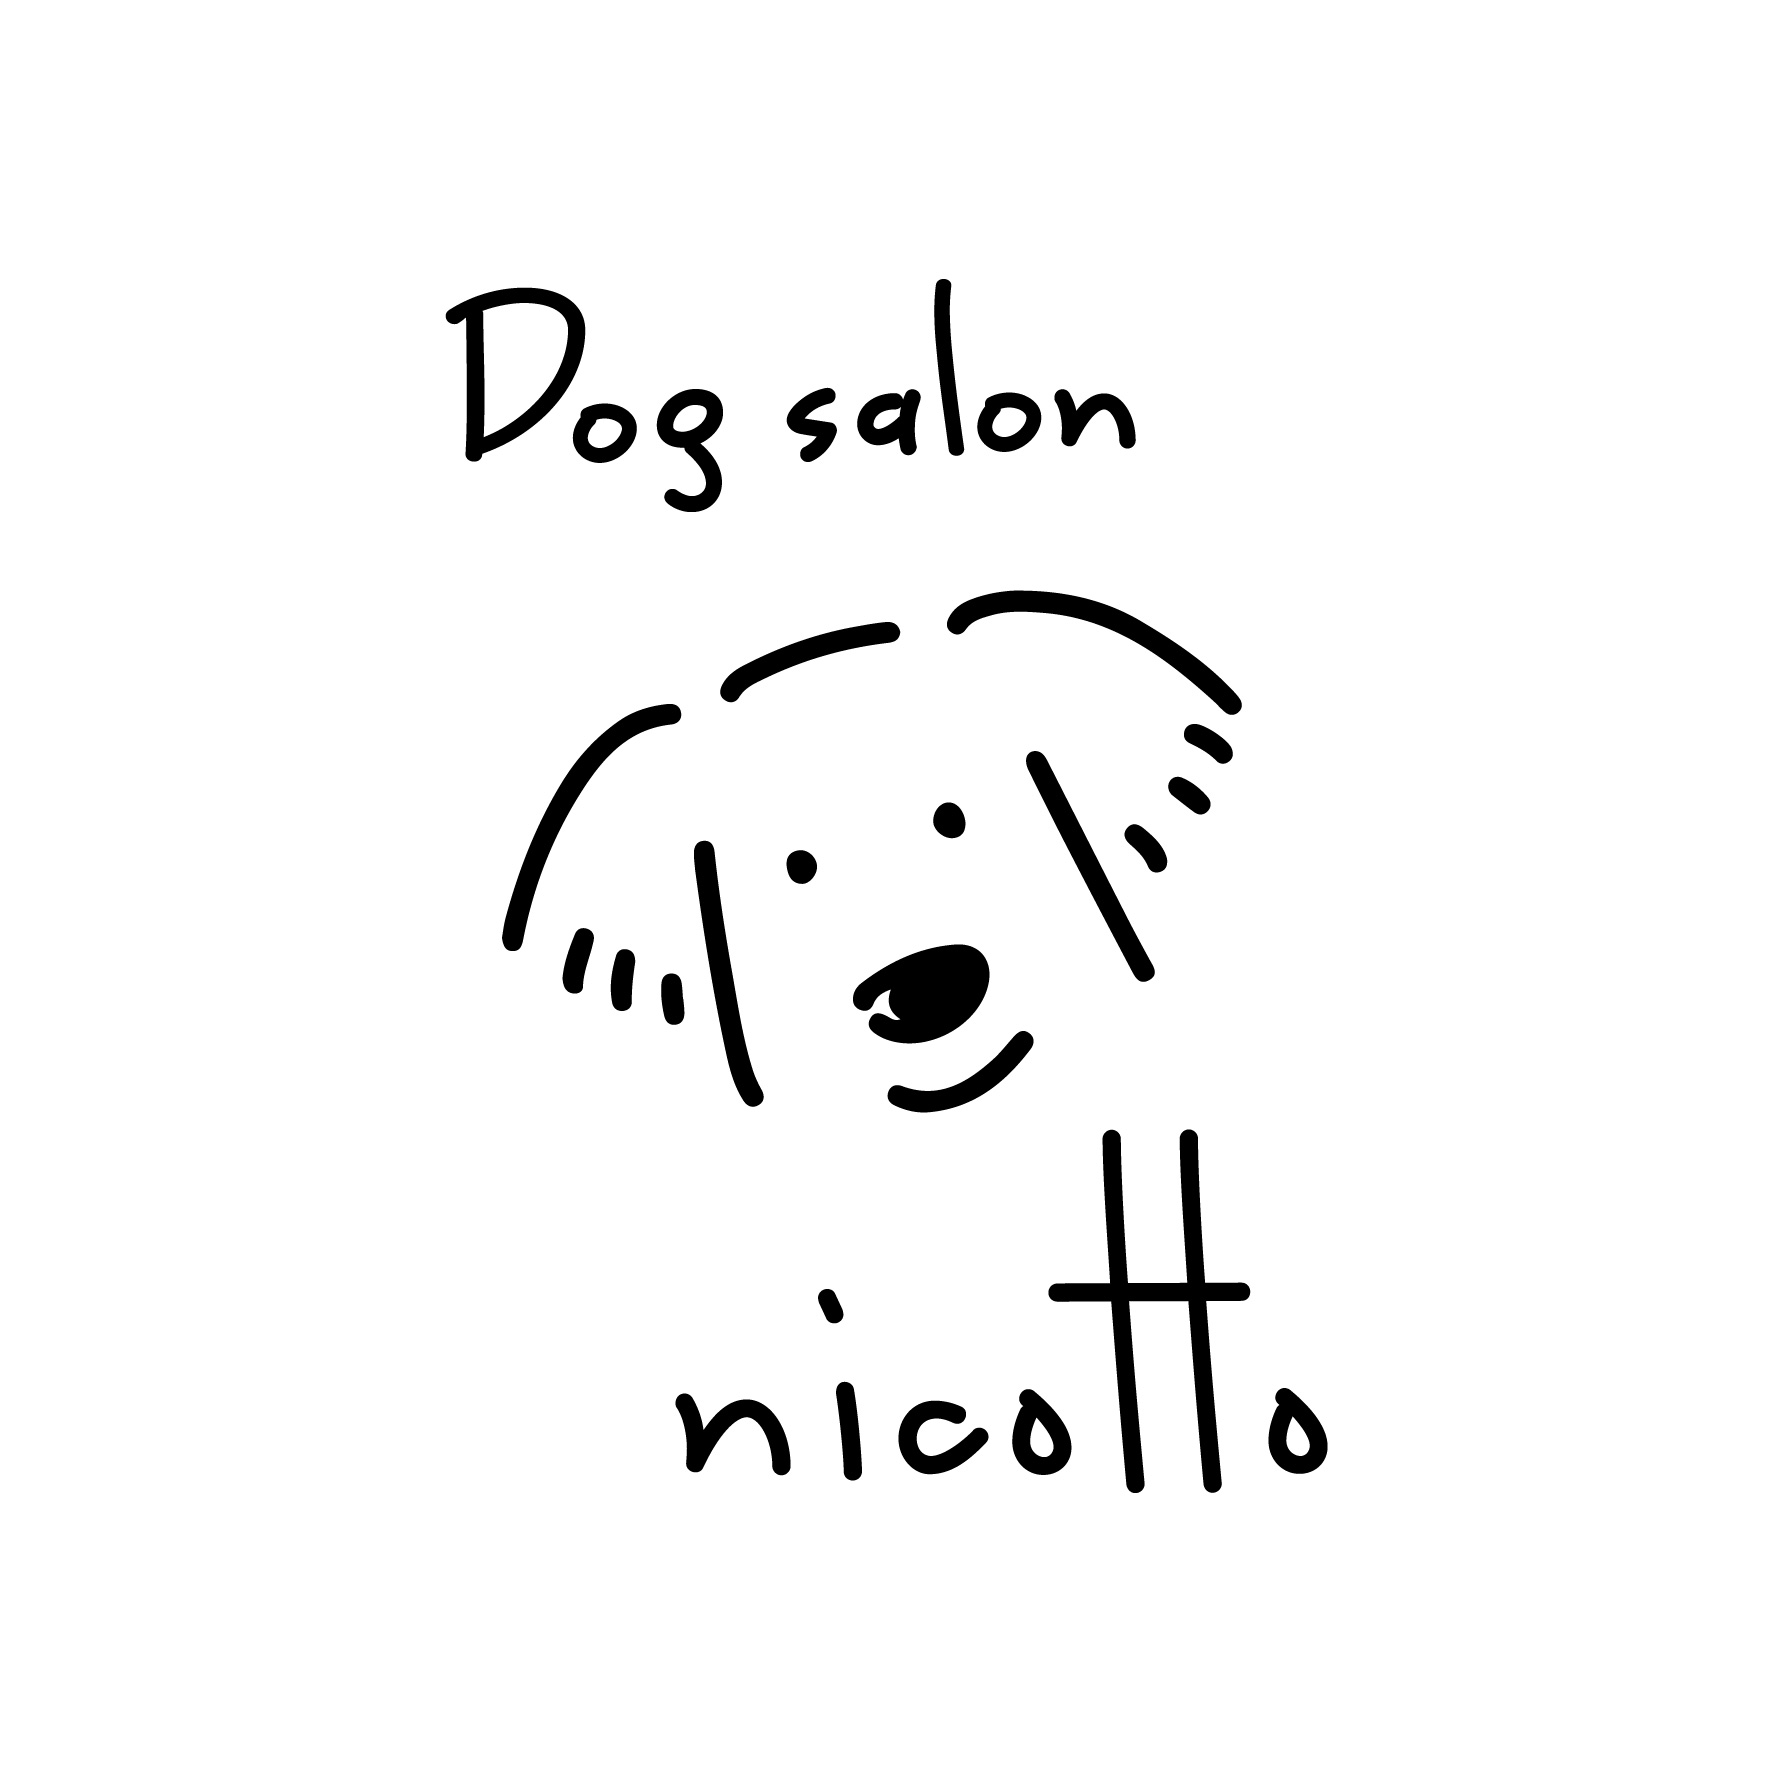 Dogsalon nicotto のサムネイル